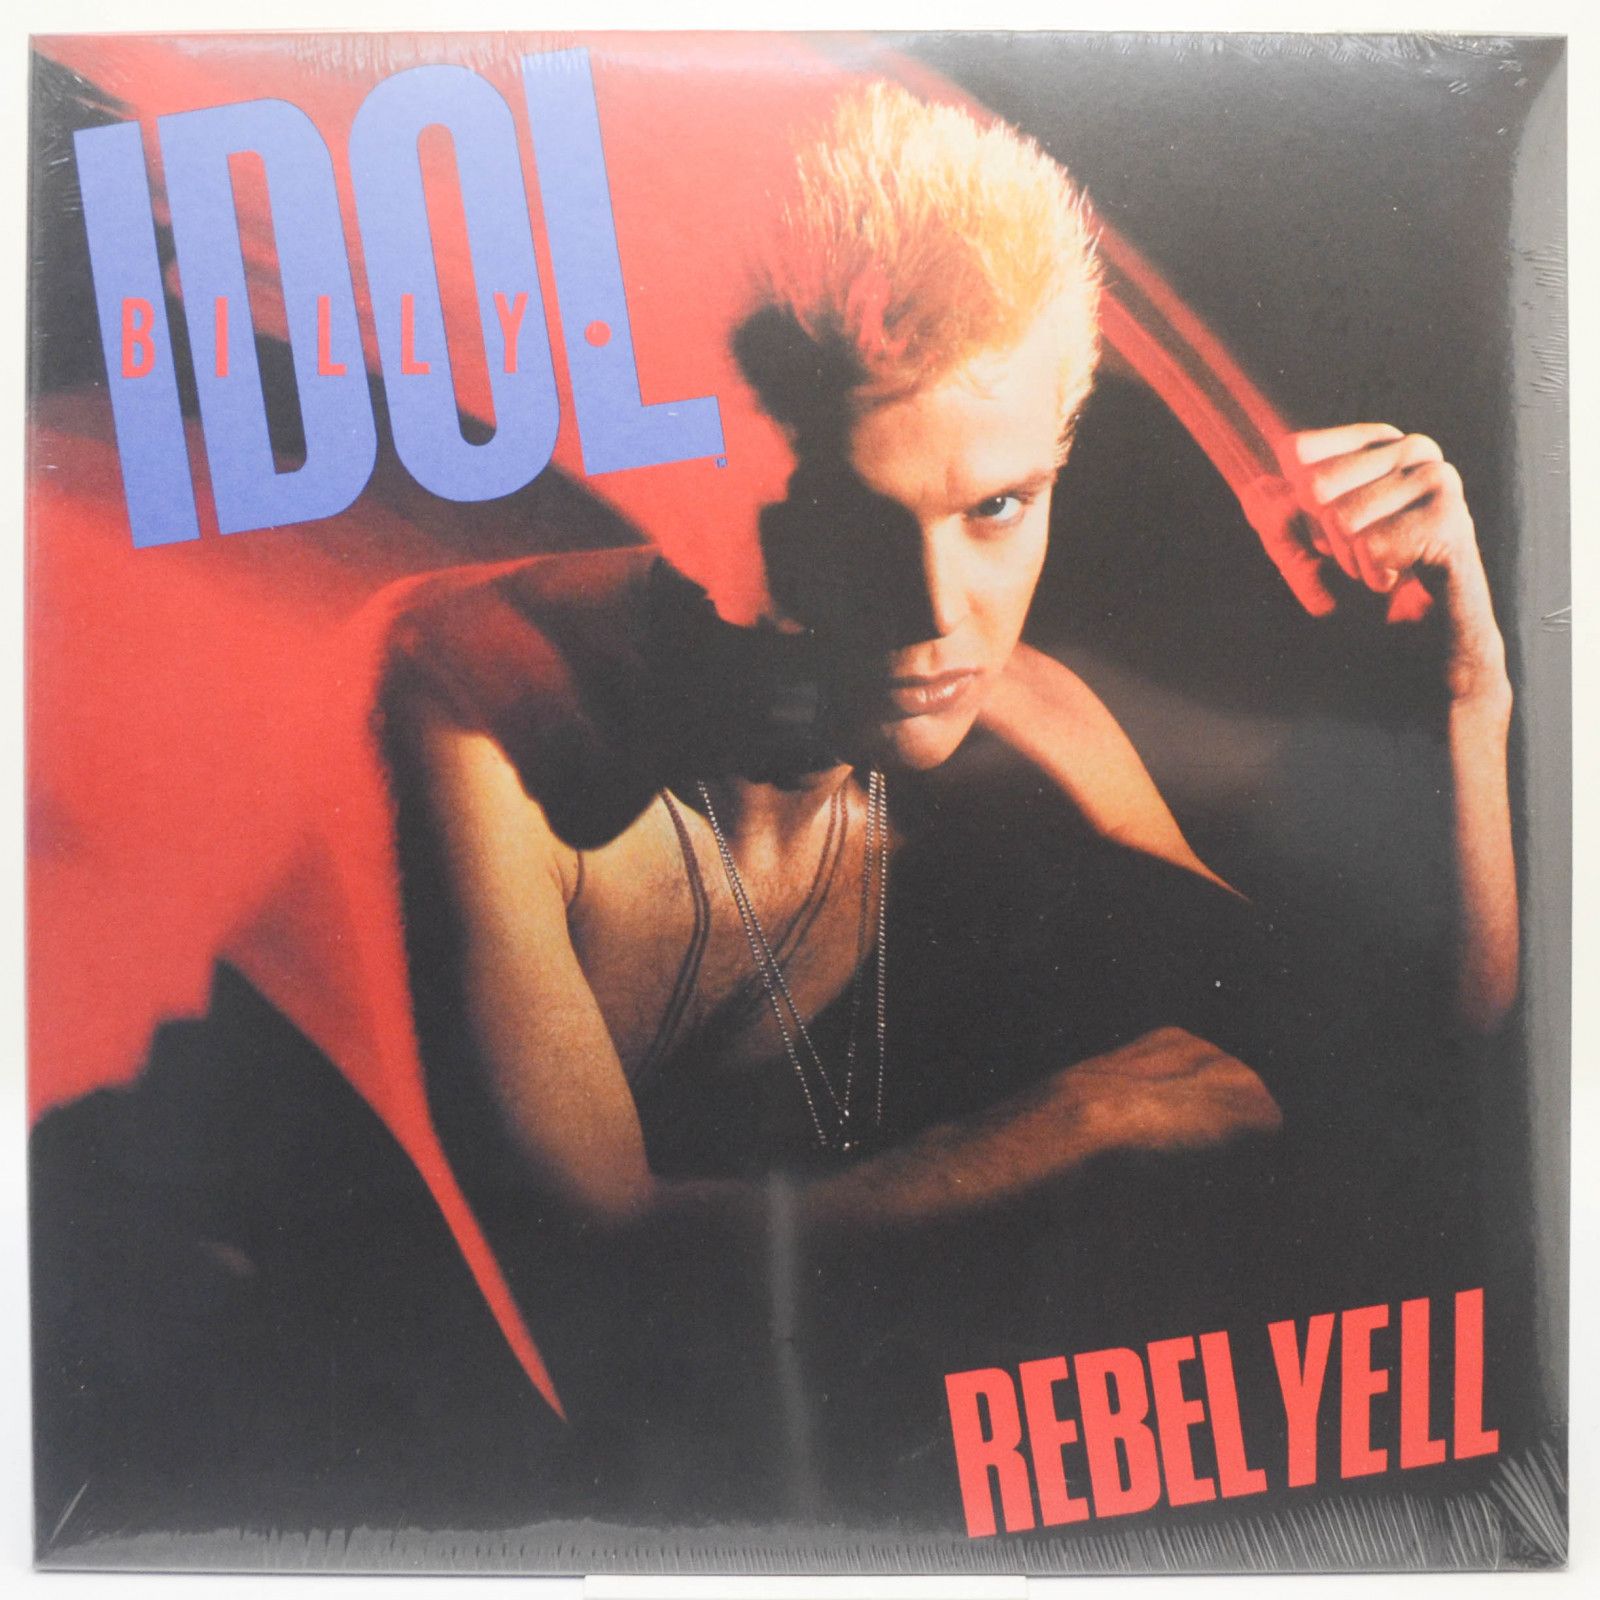 Billy Idol — Rebel Yell, 1983